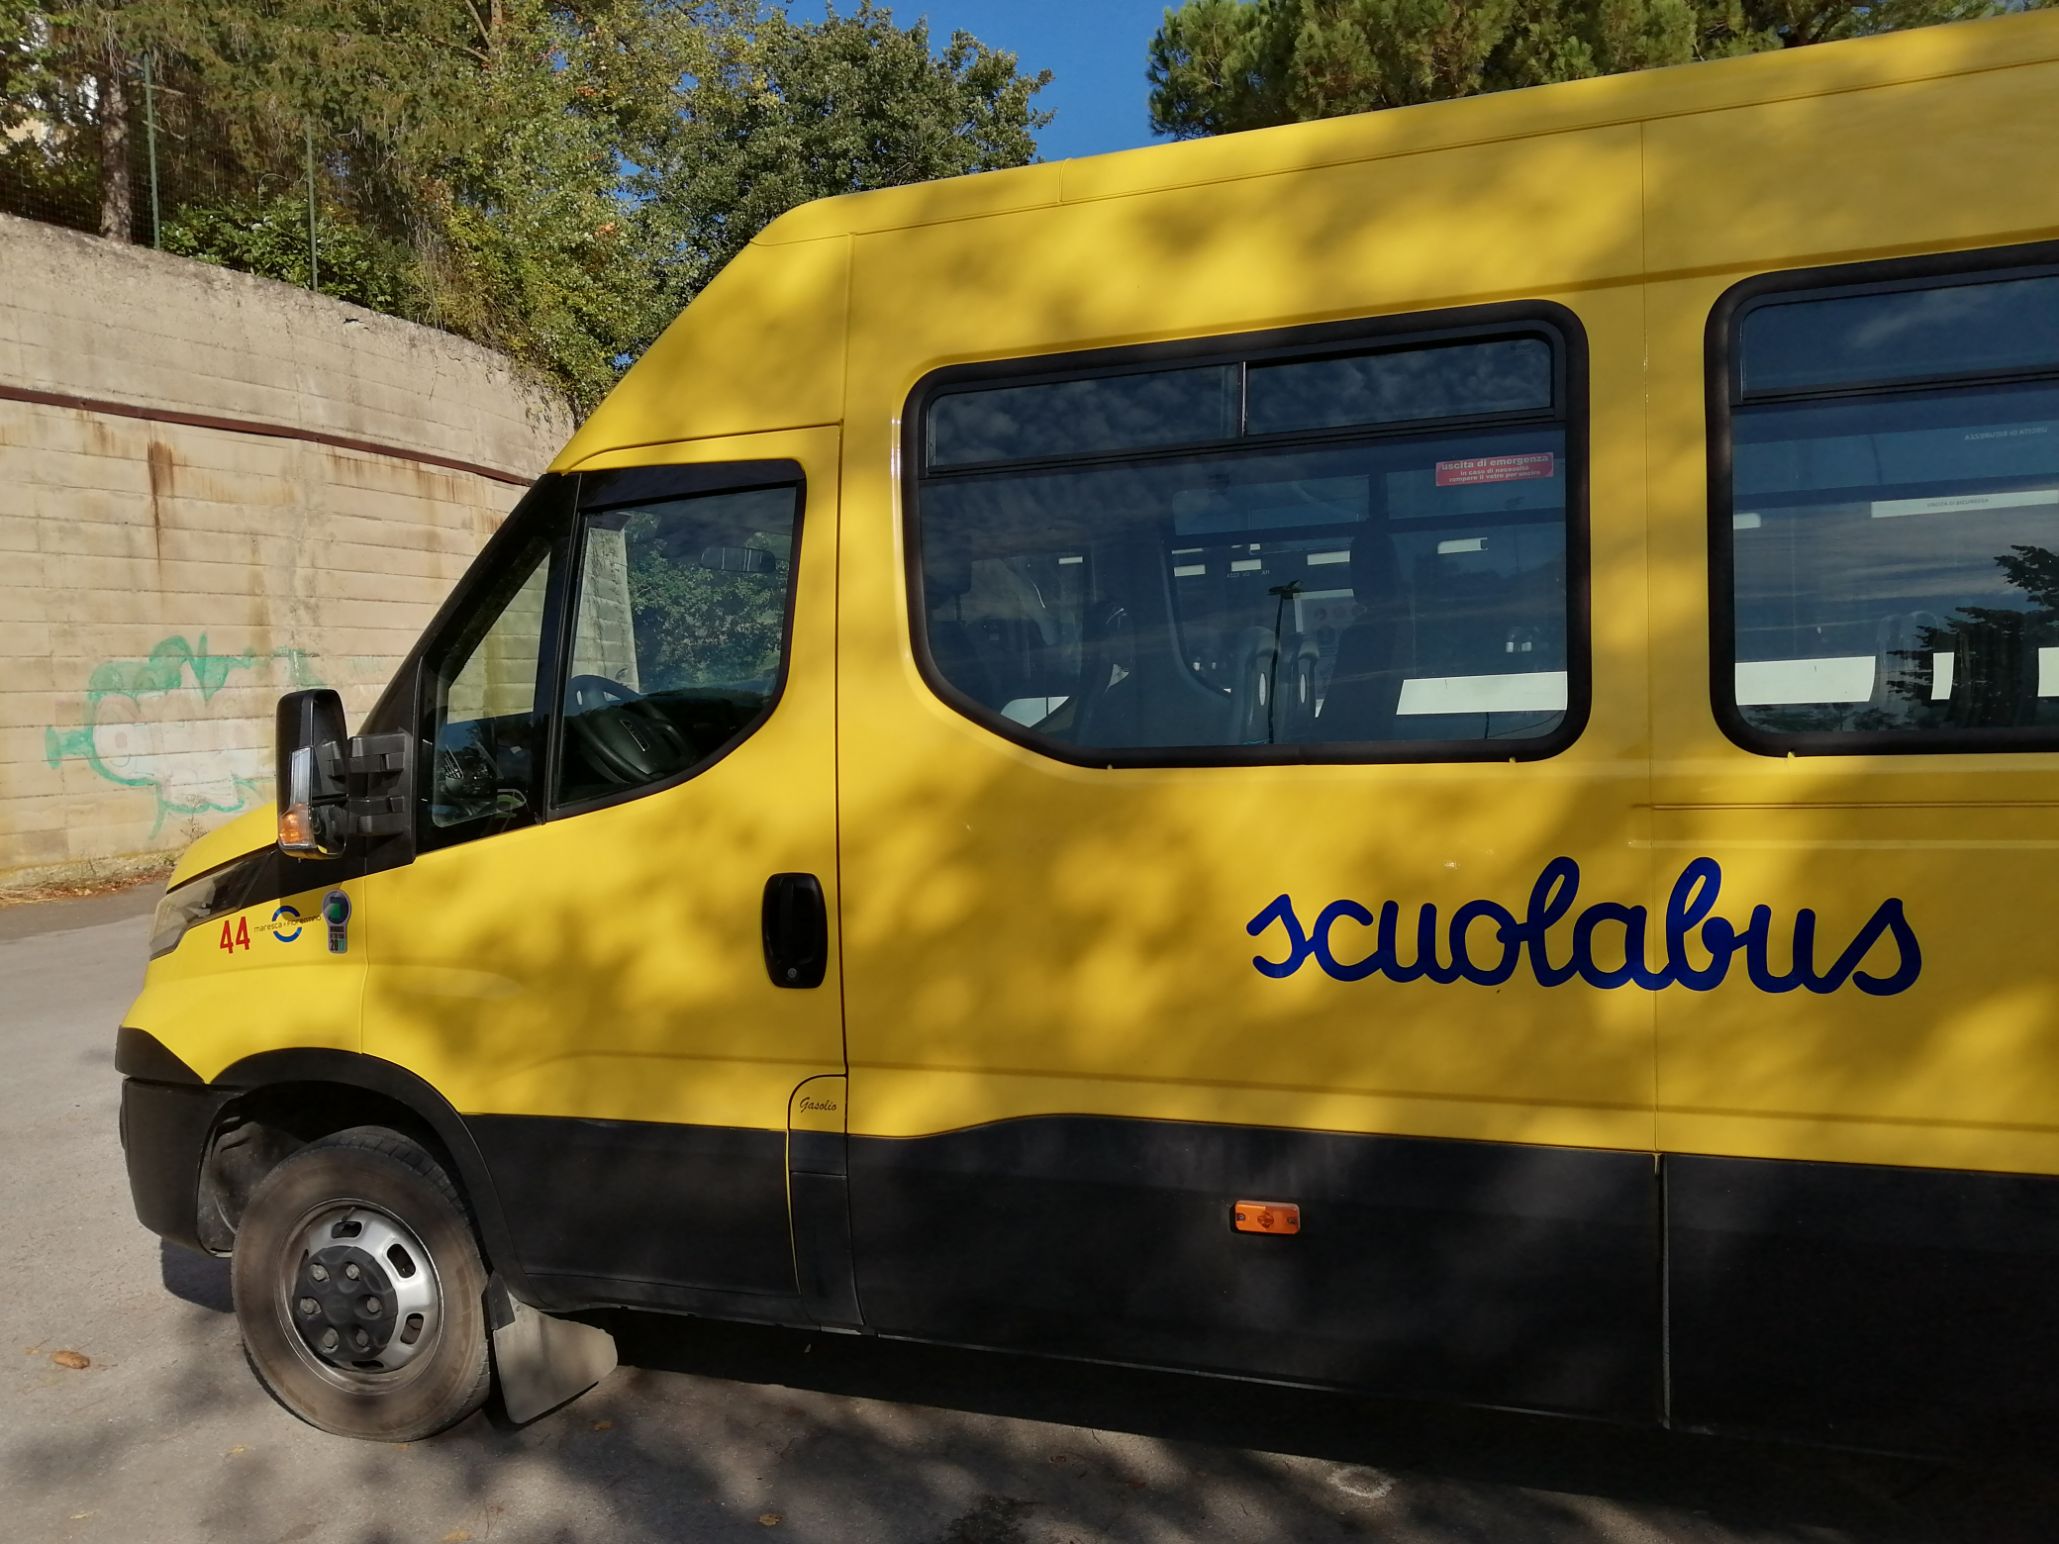 L’azienda gestisce il servizio scuolabus in 37 comuni tra Siena, Arezzo, Grosseto e Piombino